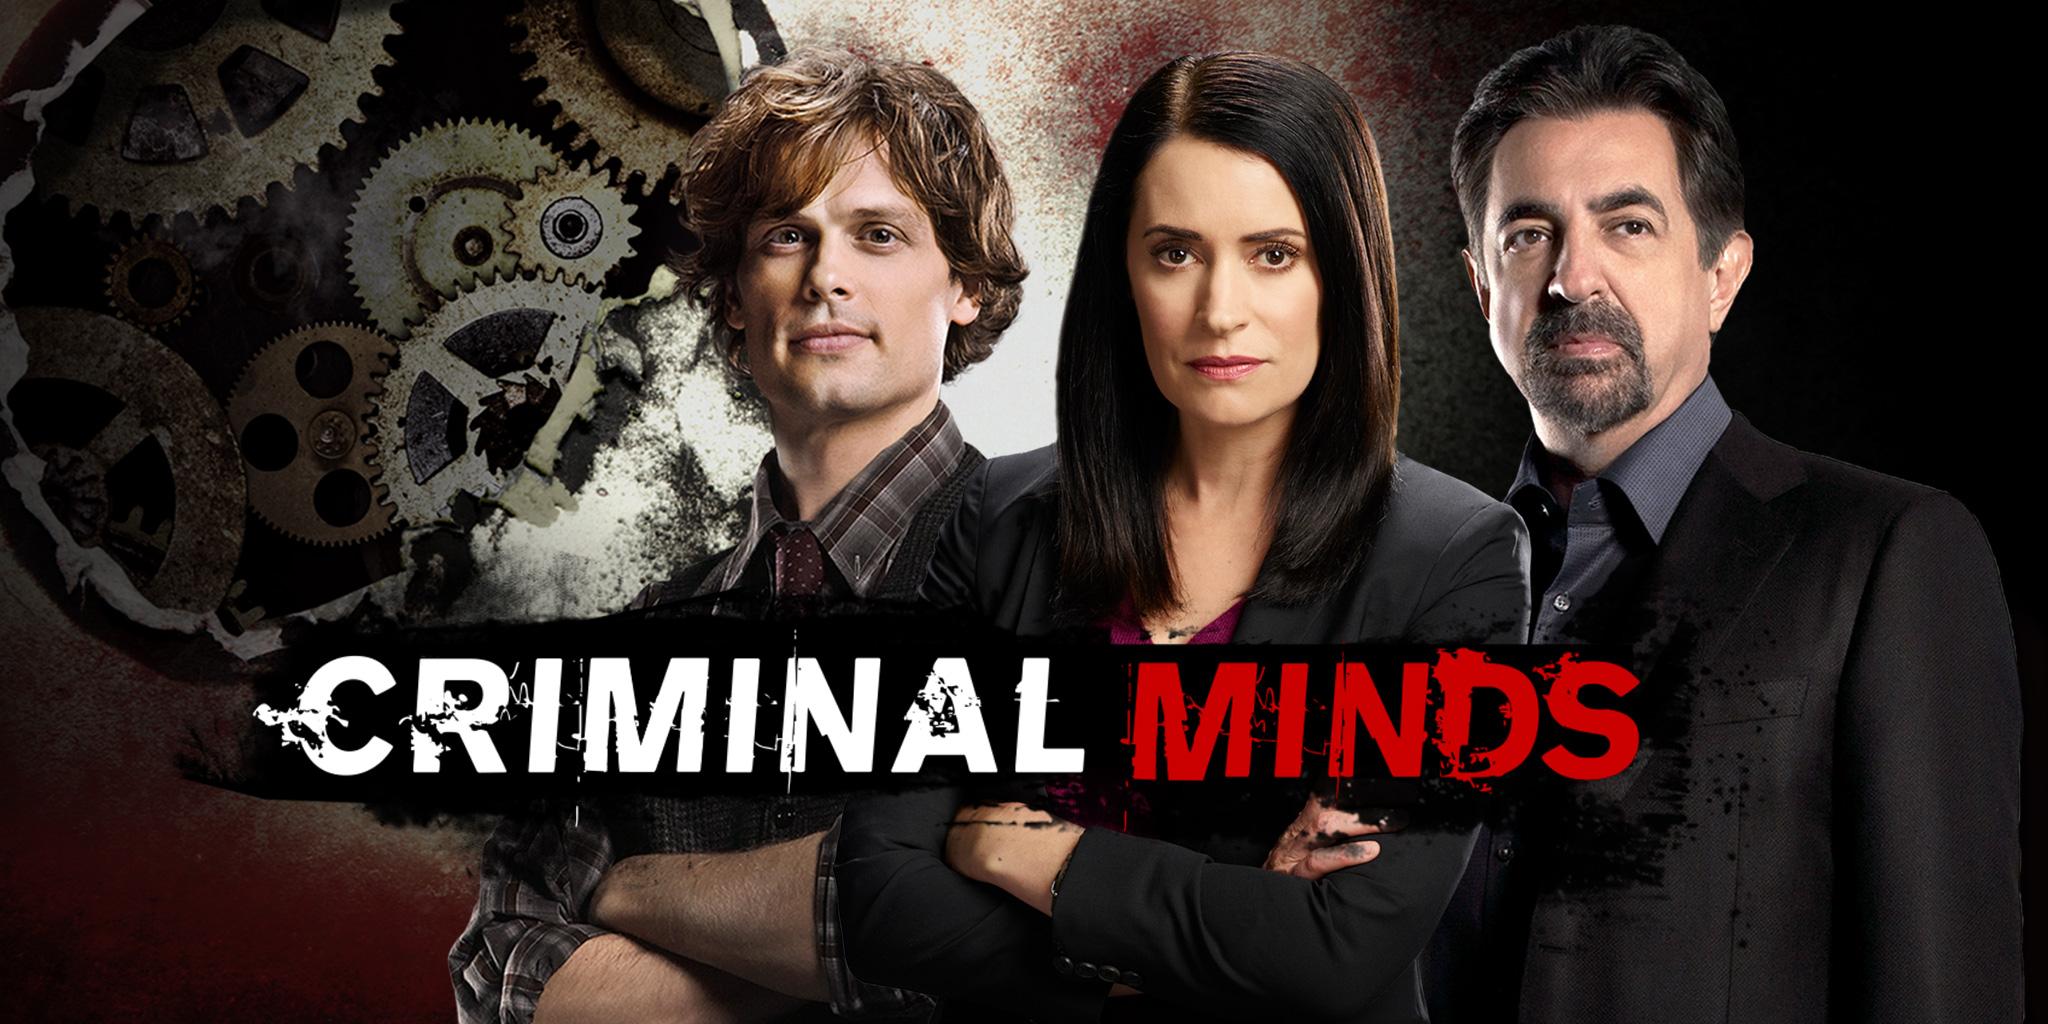  Criminal Minds (2005-2020) Criminal Minds (2005-2020) ist eine US-amerikanische Krimiserie. 